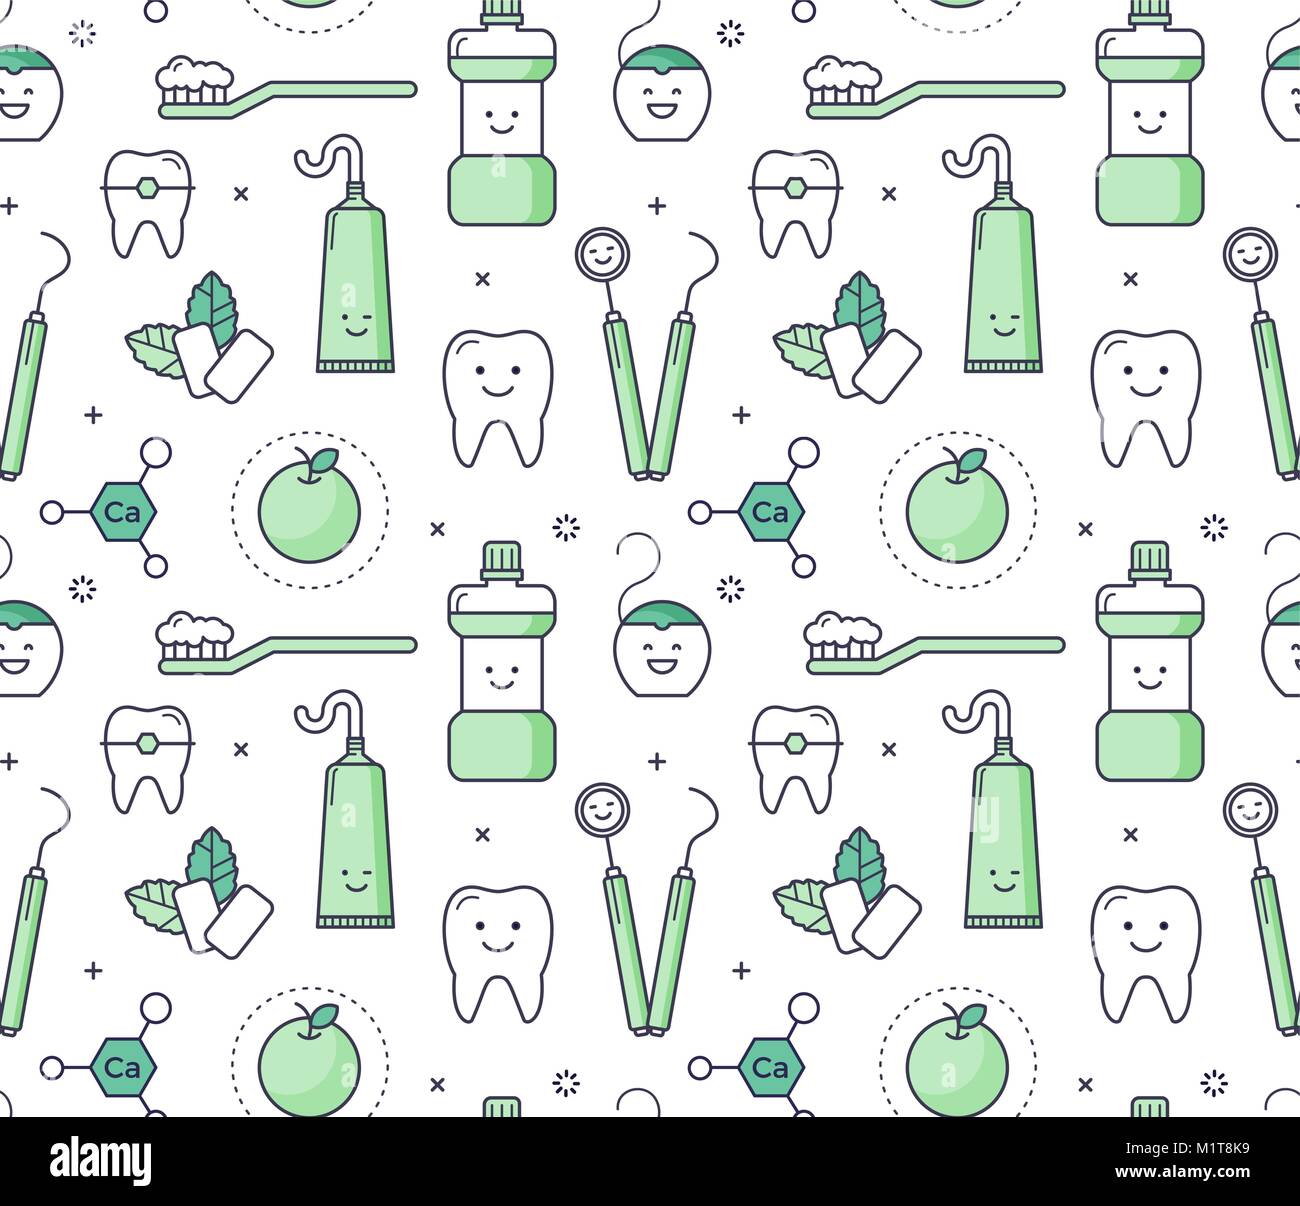 Zahnarzt Werkzeug Zahnschmuck Vektor care Symbol isoliert Klinik Heilung  Zahnmedizin Zahnmedizin design Arzt Ausrüstung bohren Stock-Vektorgrafik -  Alamy